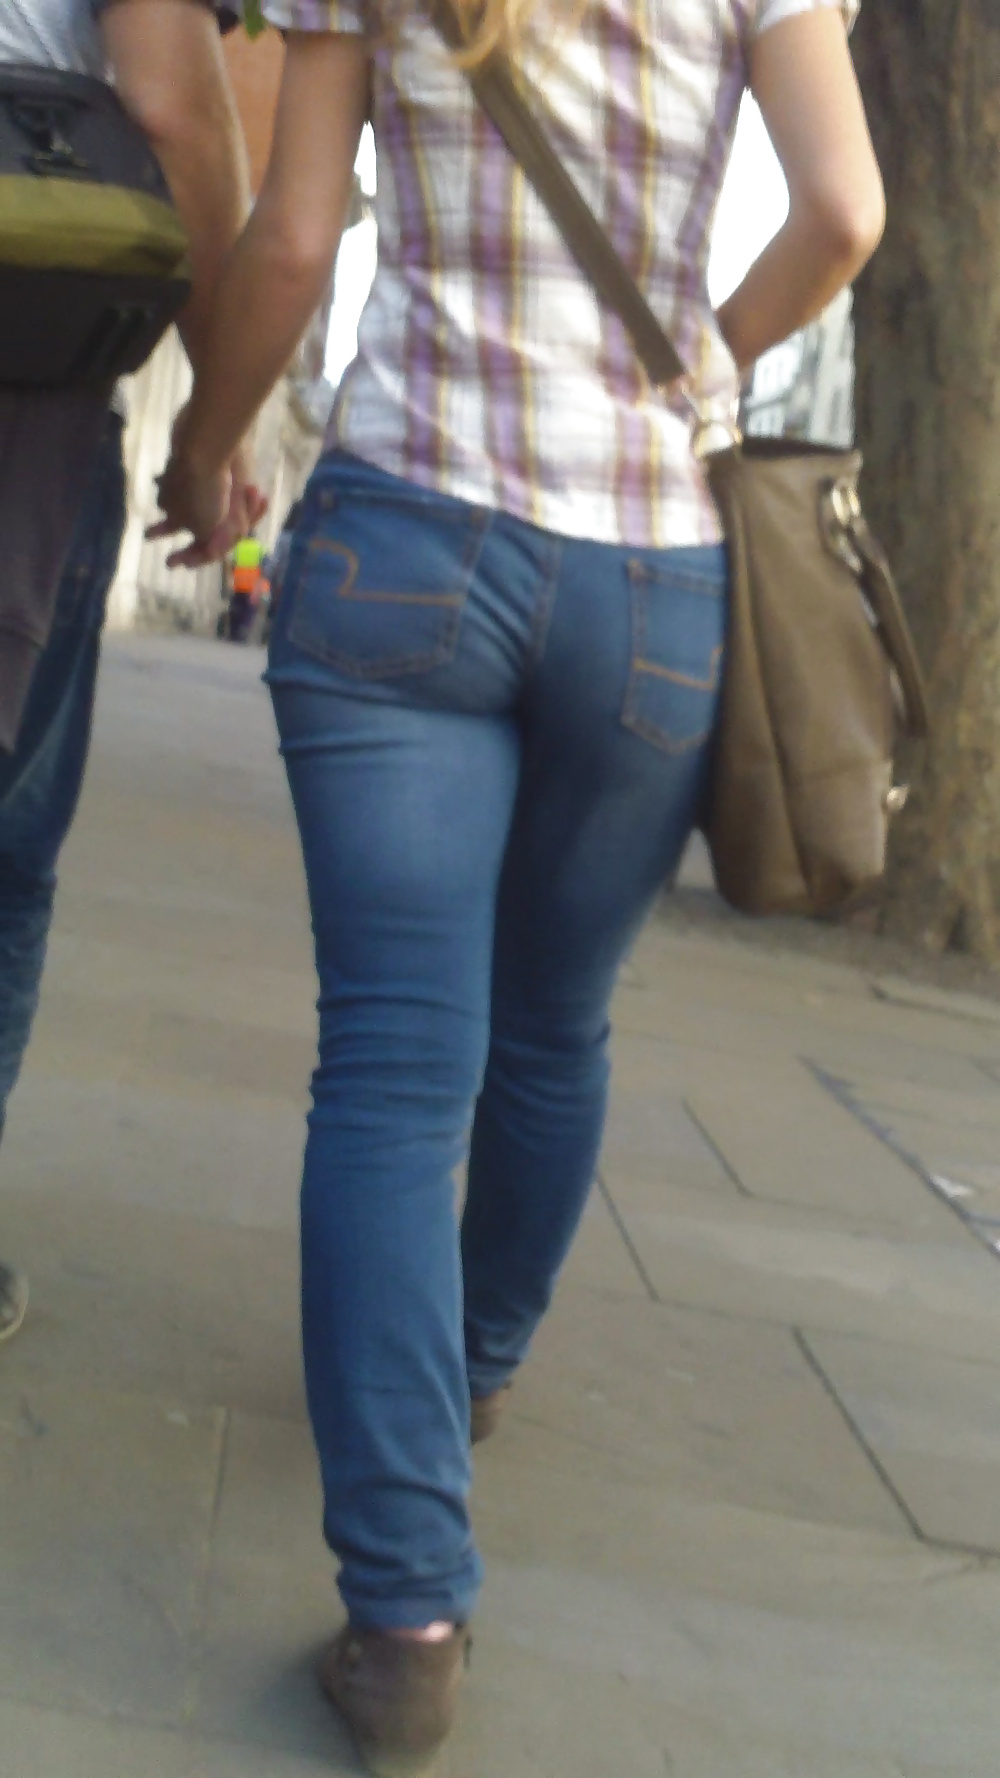 Popular teen girls ass & butt in jeans Part 6 #32010167